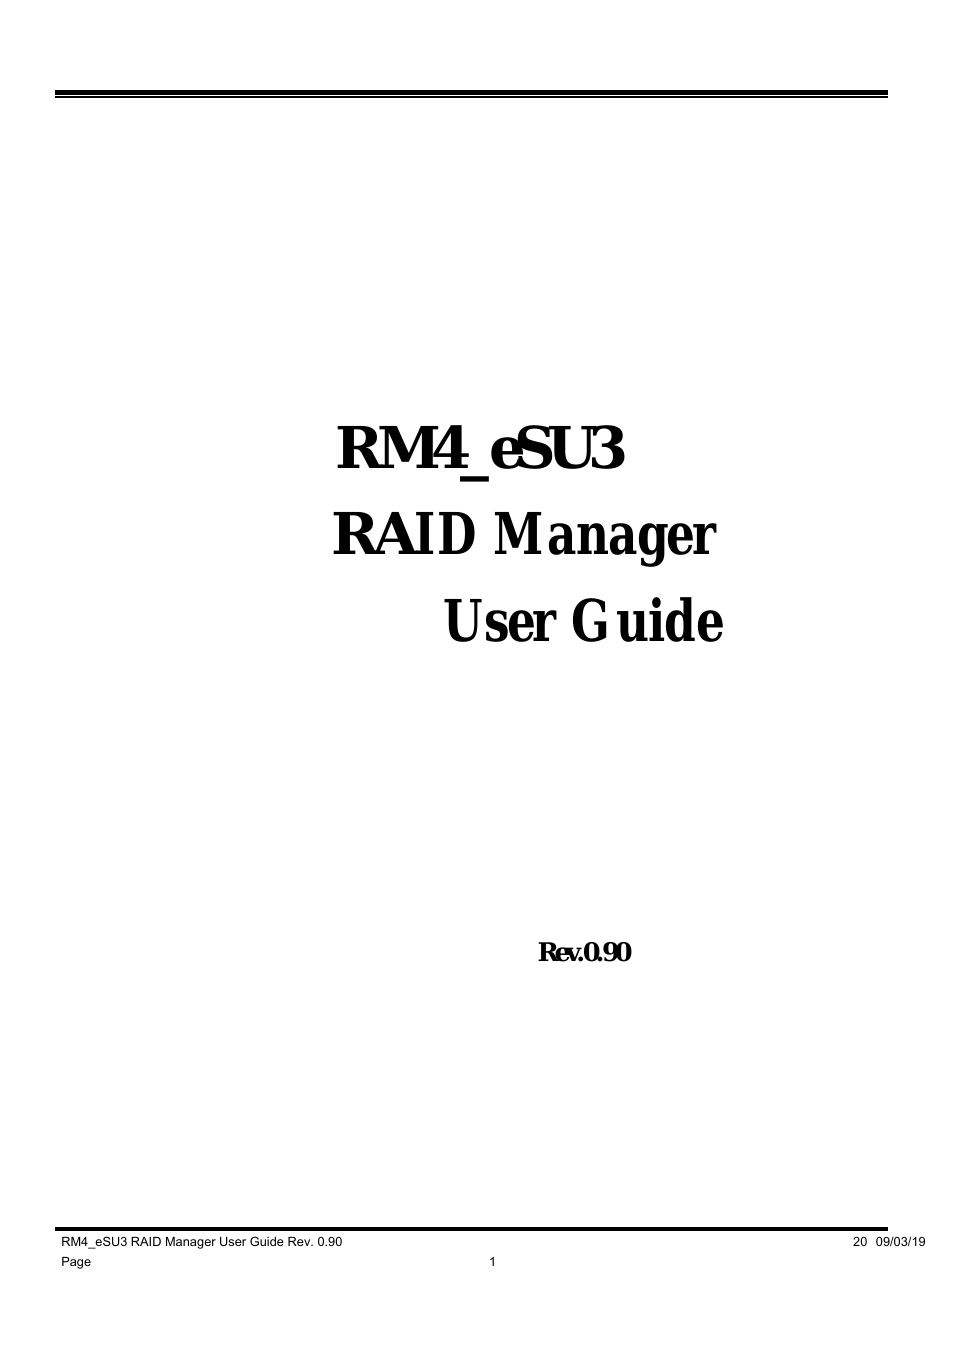 RM4_eSU3 RAID Manager